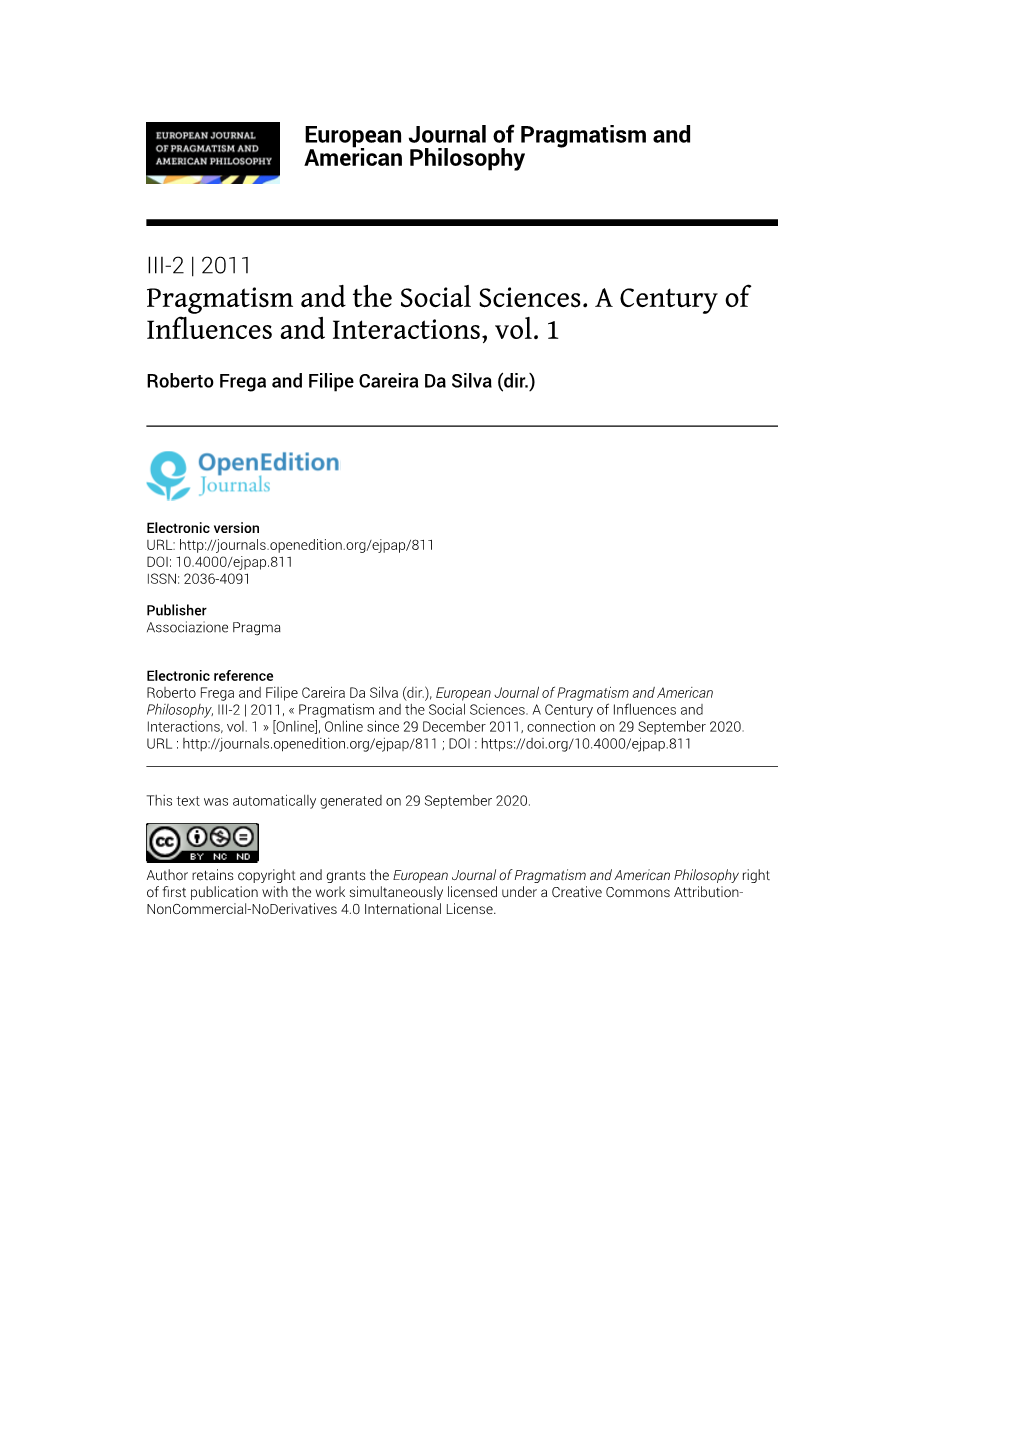 European Journal of Pragmatism and American Philosophy, III-2 | 2011, « Pragmatism and the Social Sciences